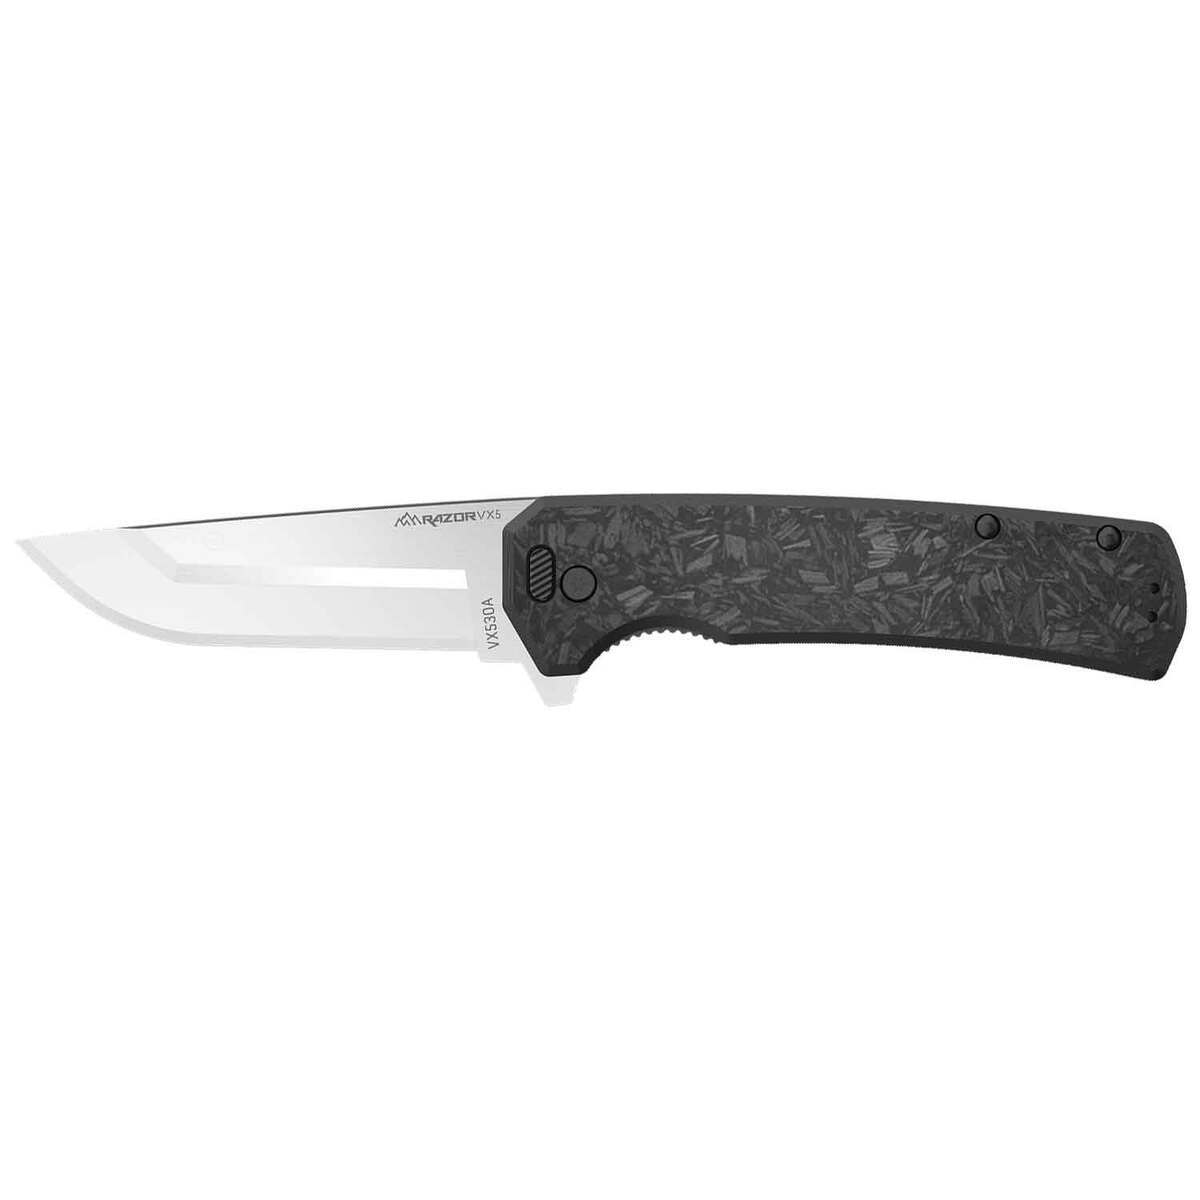 https://www.sportsmans.com/medias/outdoor-edge-razor-vx5-3-inch-folding-knife-1850722-1.jpg?context=bWFzdGVyfGltYWdlc3wyNDE0OXxpbWFnZS9qcGVnfGgwMy9oOWUvMTE2NDMwODc4MTQ2ODYvMTIwMC1jb252ZXJzaW9uRm9ybWF0X2Jhc2UtY29udmVyc2lvbkZvcm1hdF9zbXctMTg1MDcyMi0xLmpwZ3wxNTg0OGE0MjFhMTk4ZTI4Y2E0MmZiMTFiNDIzNDY4YWEyMzRiODcyNDE1NjczM2E5ZmM2MDgxNzA2YzgyYTVm